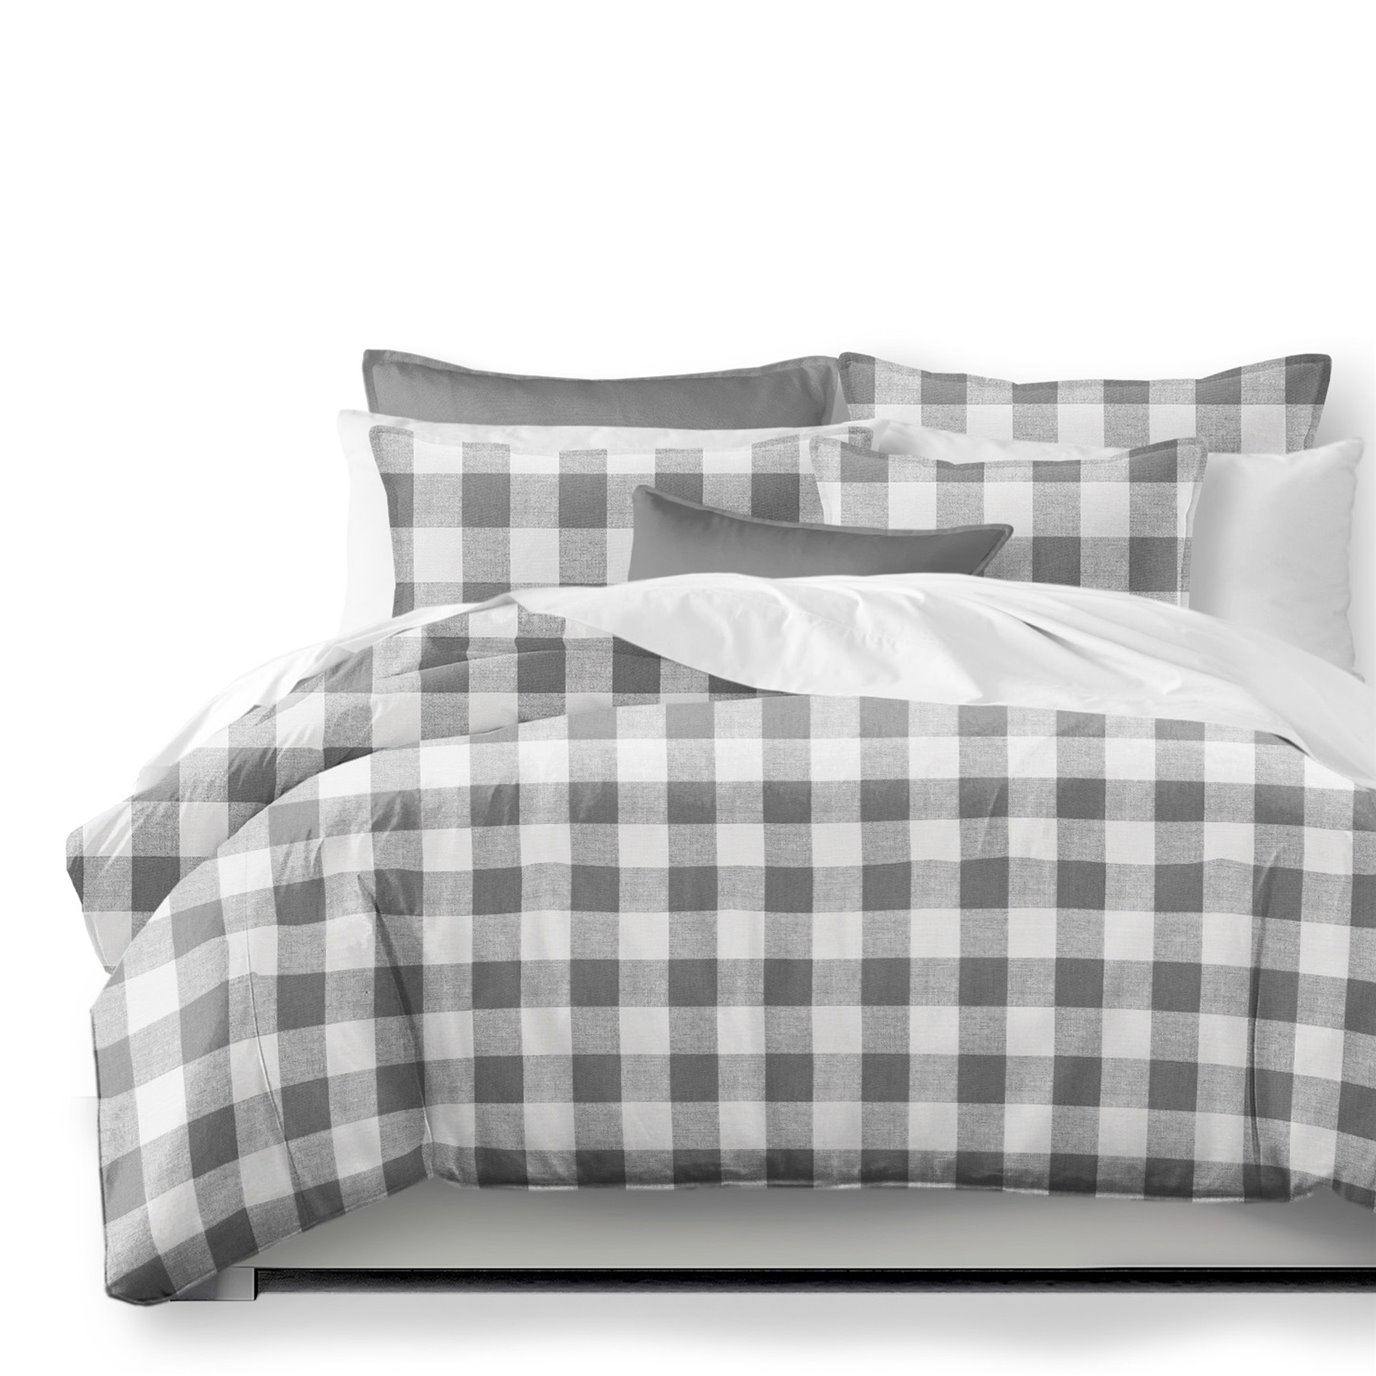 Lumberjack Check Gray/White Comforter and Pillow Sham(s) Set - Size Full